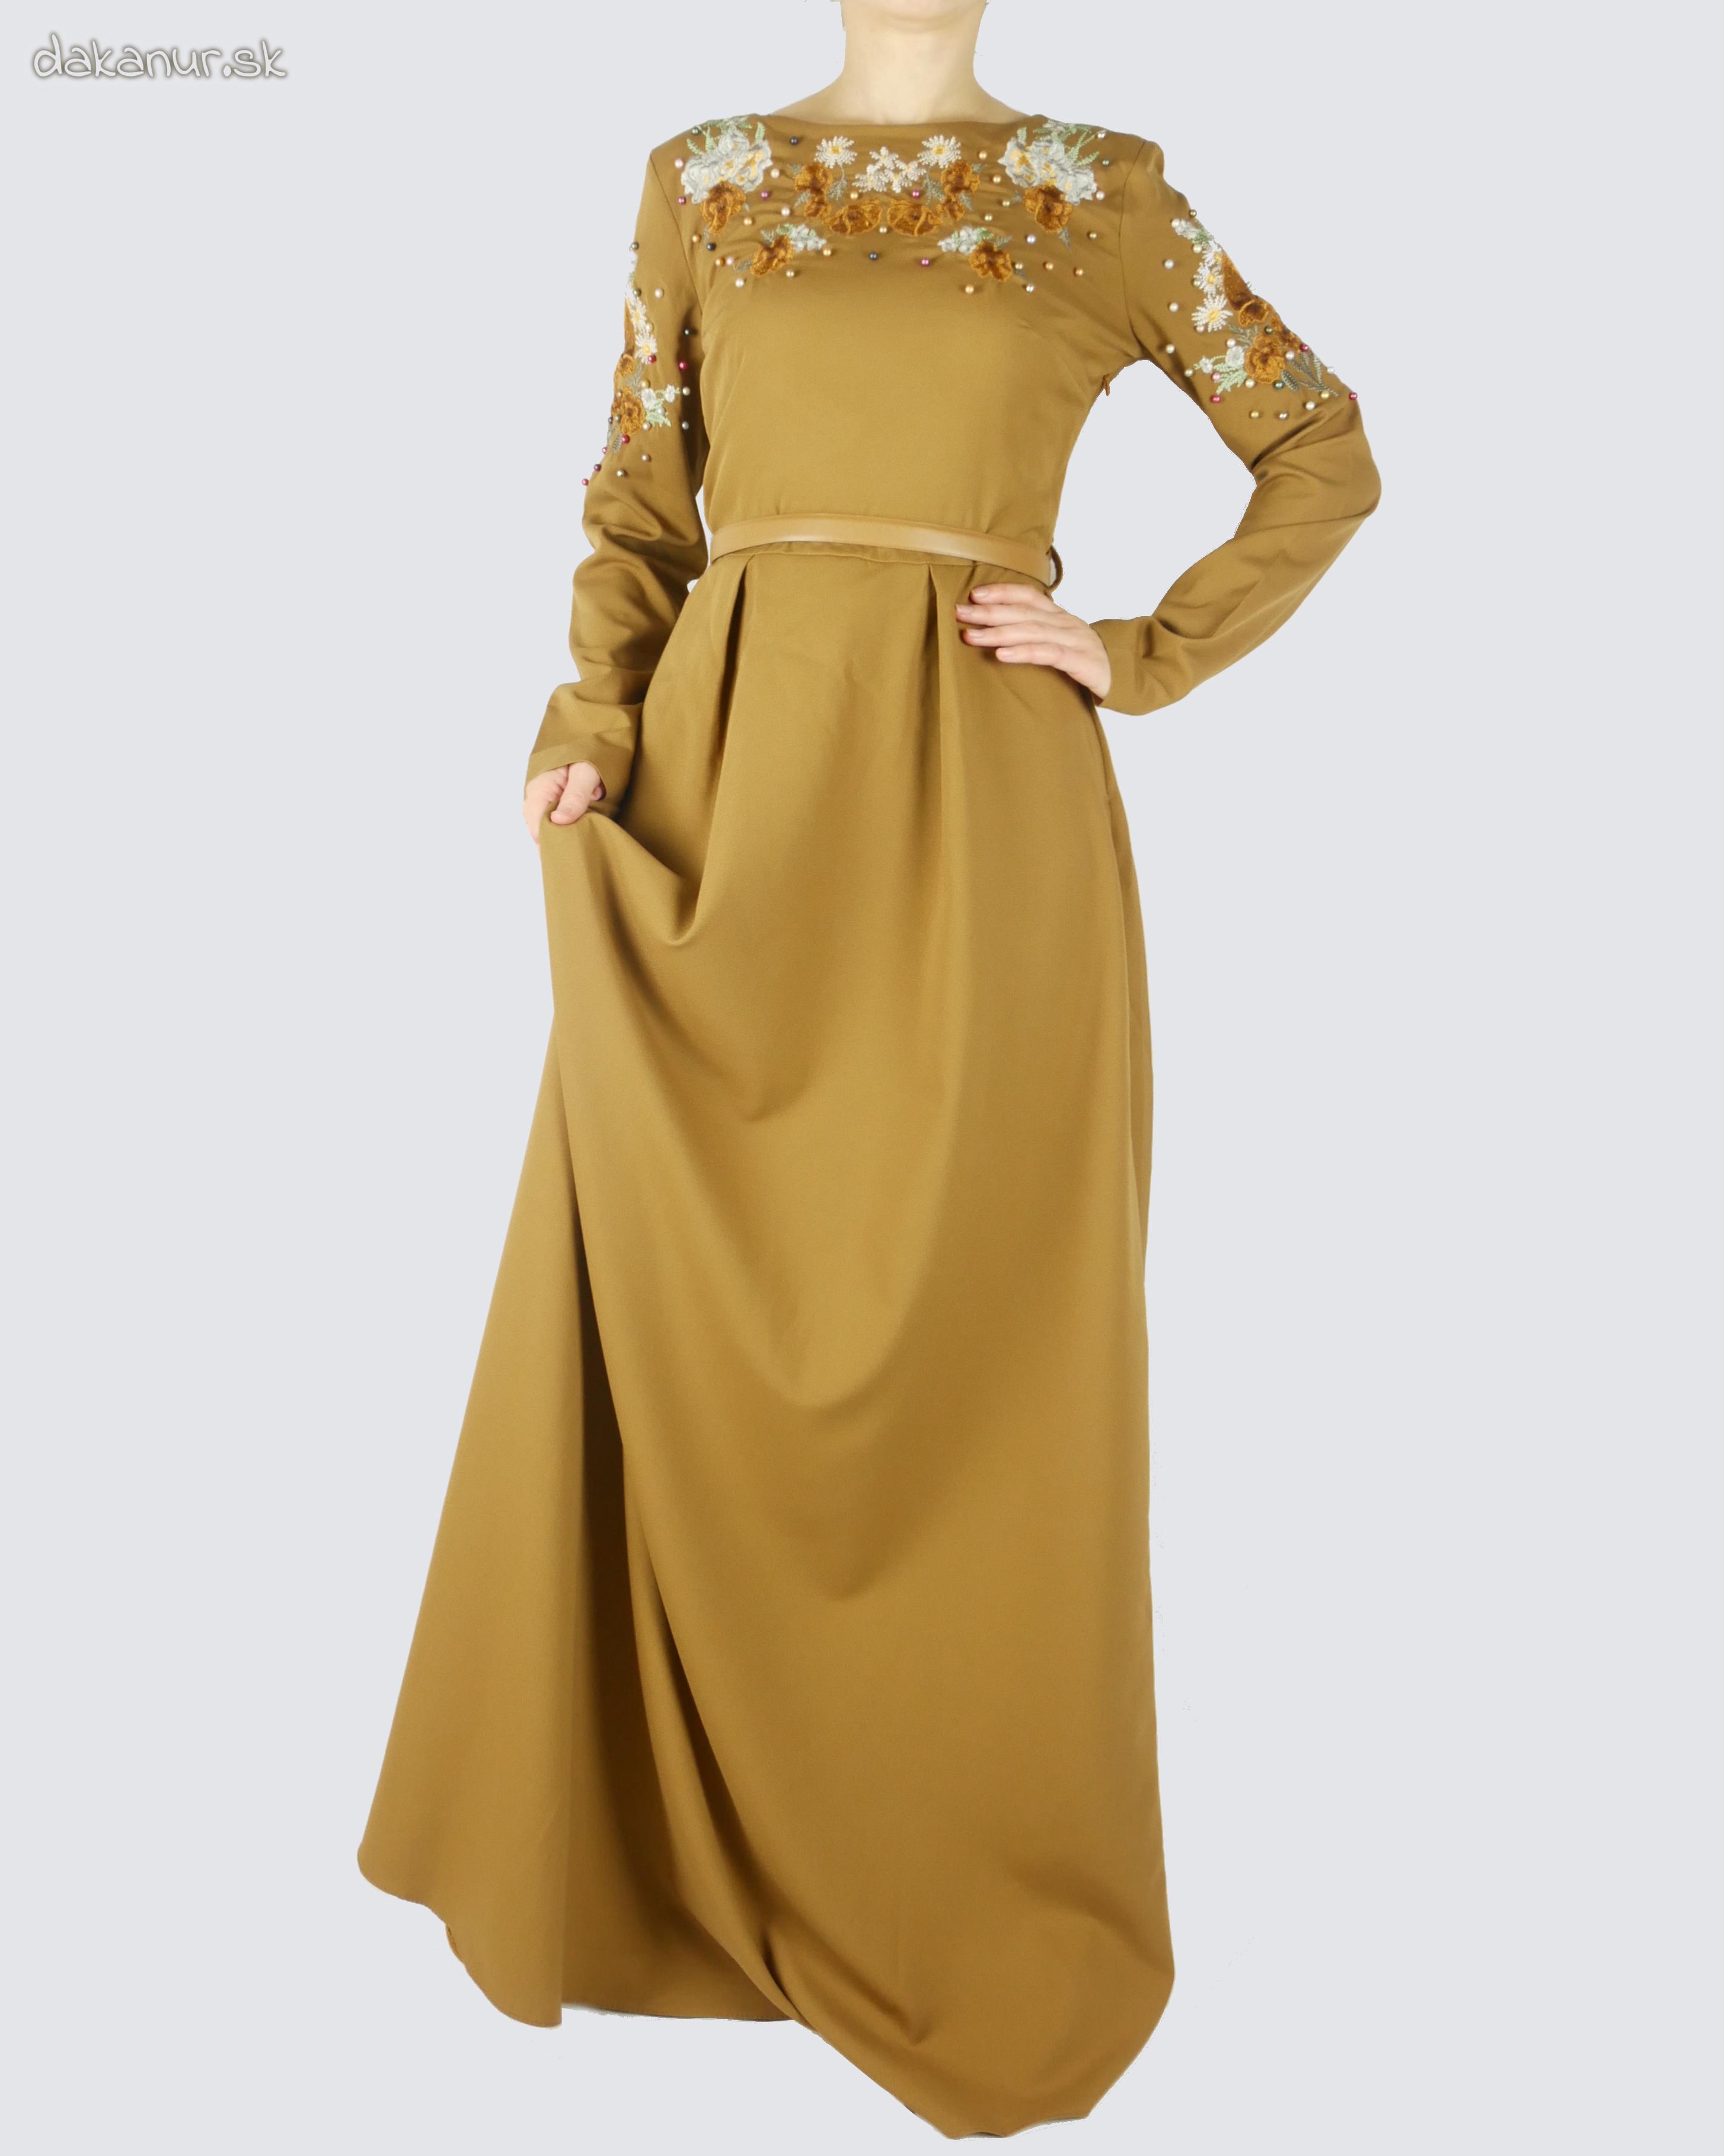 Hnedé vyšívané šaty zdobené korálkami